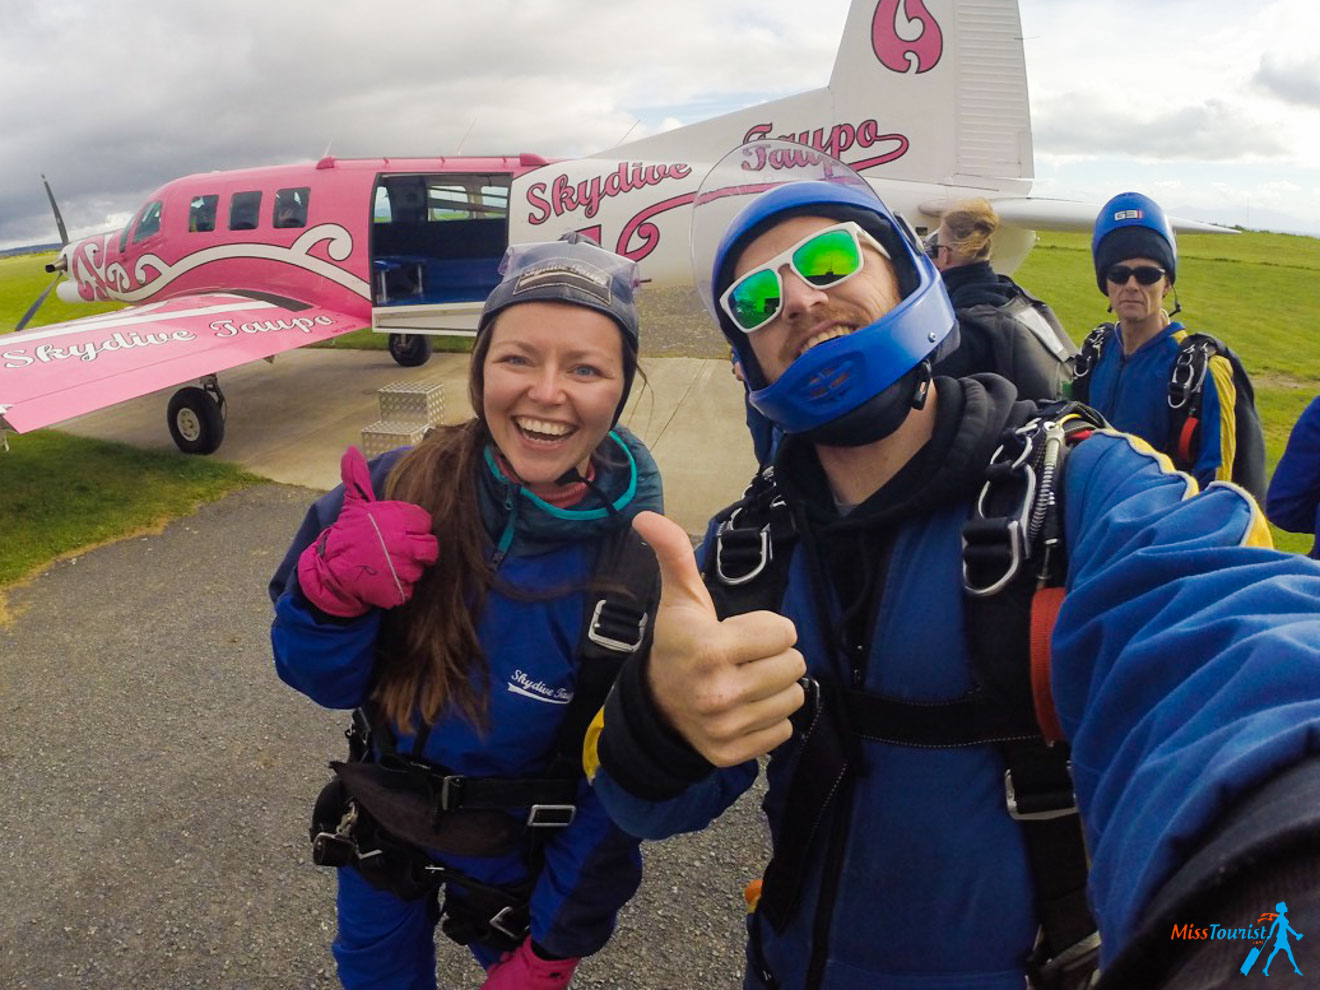 North Island in New Zealand 1 Week Road Trip skydiving 1